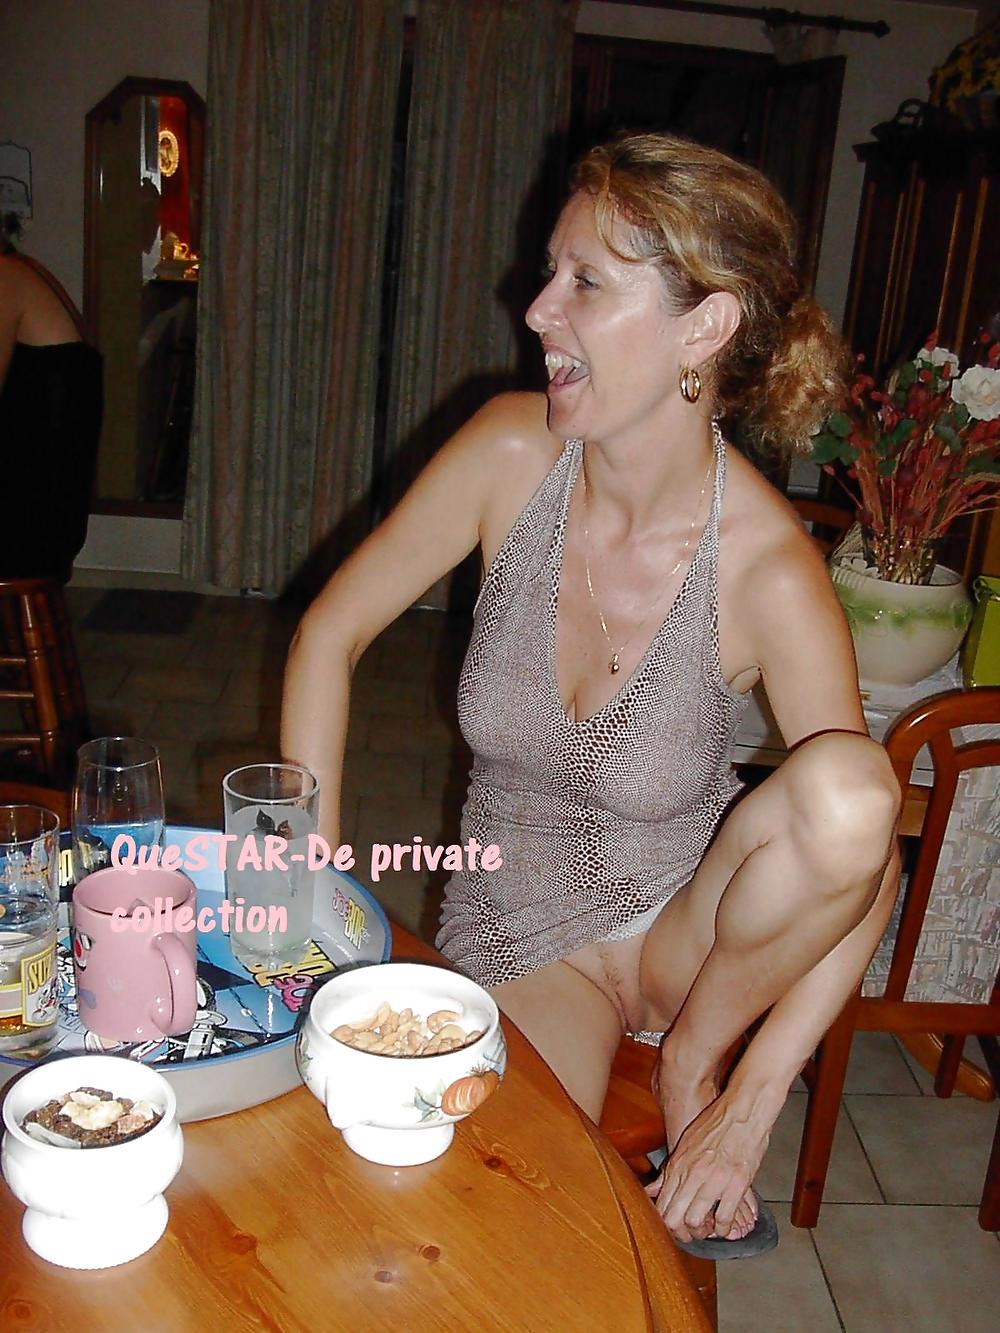 Foto private reali di donne mature 4 (da questar-de)
 #2133038